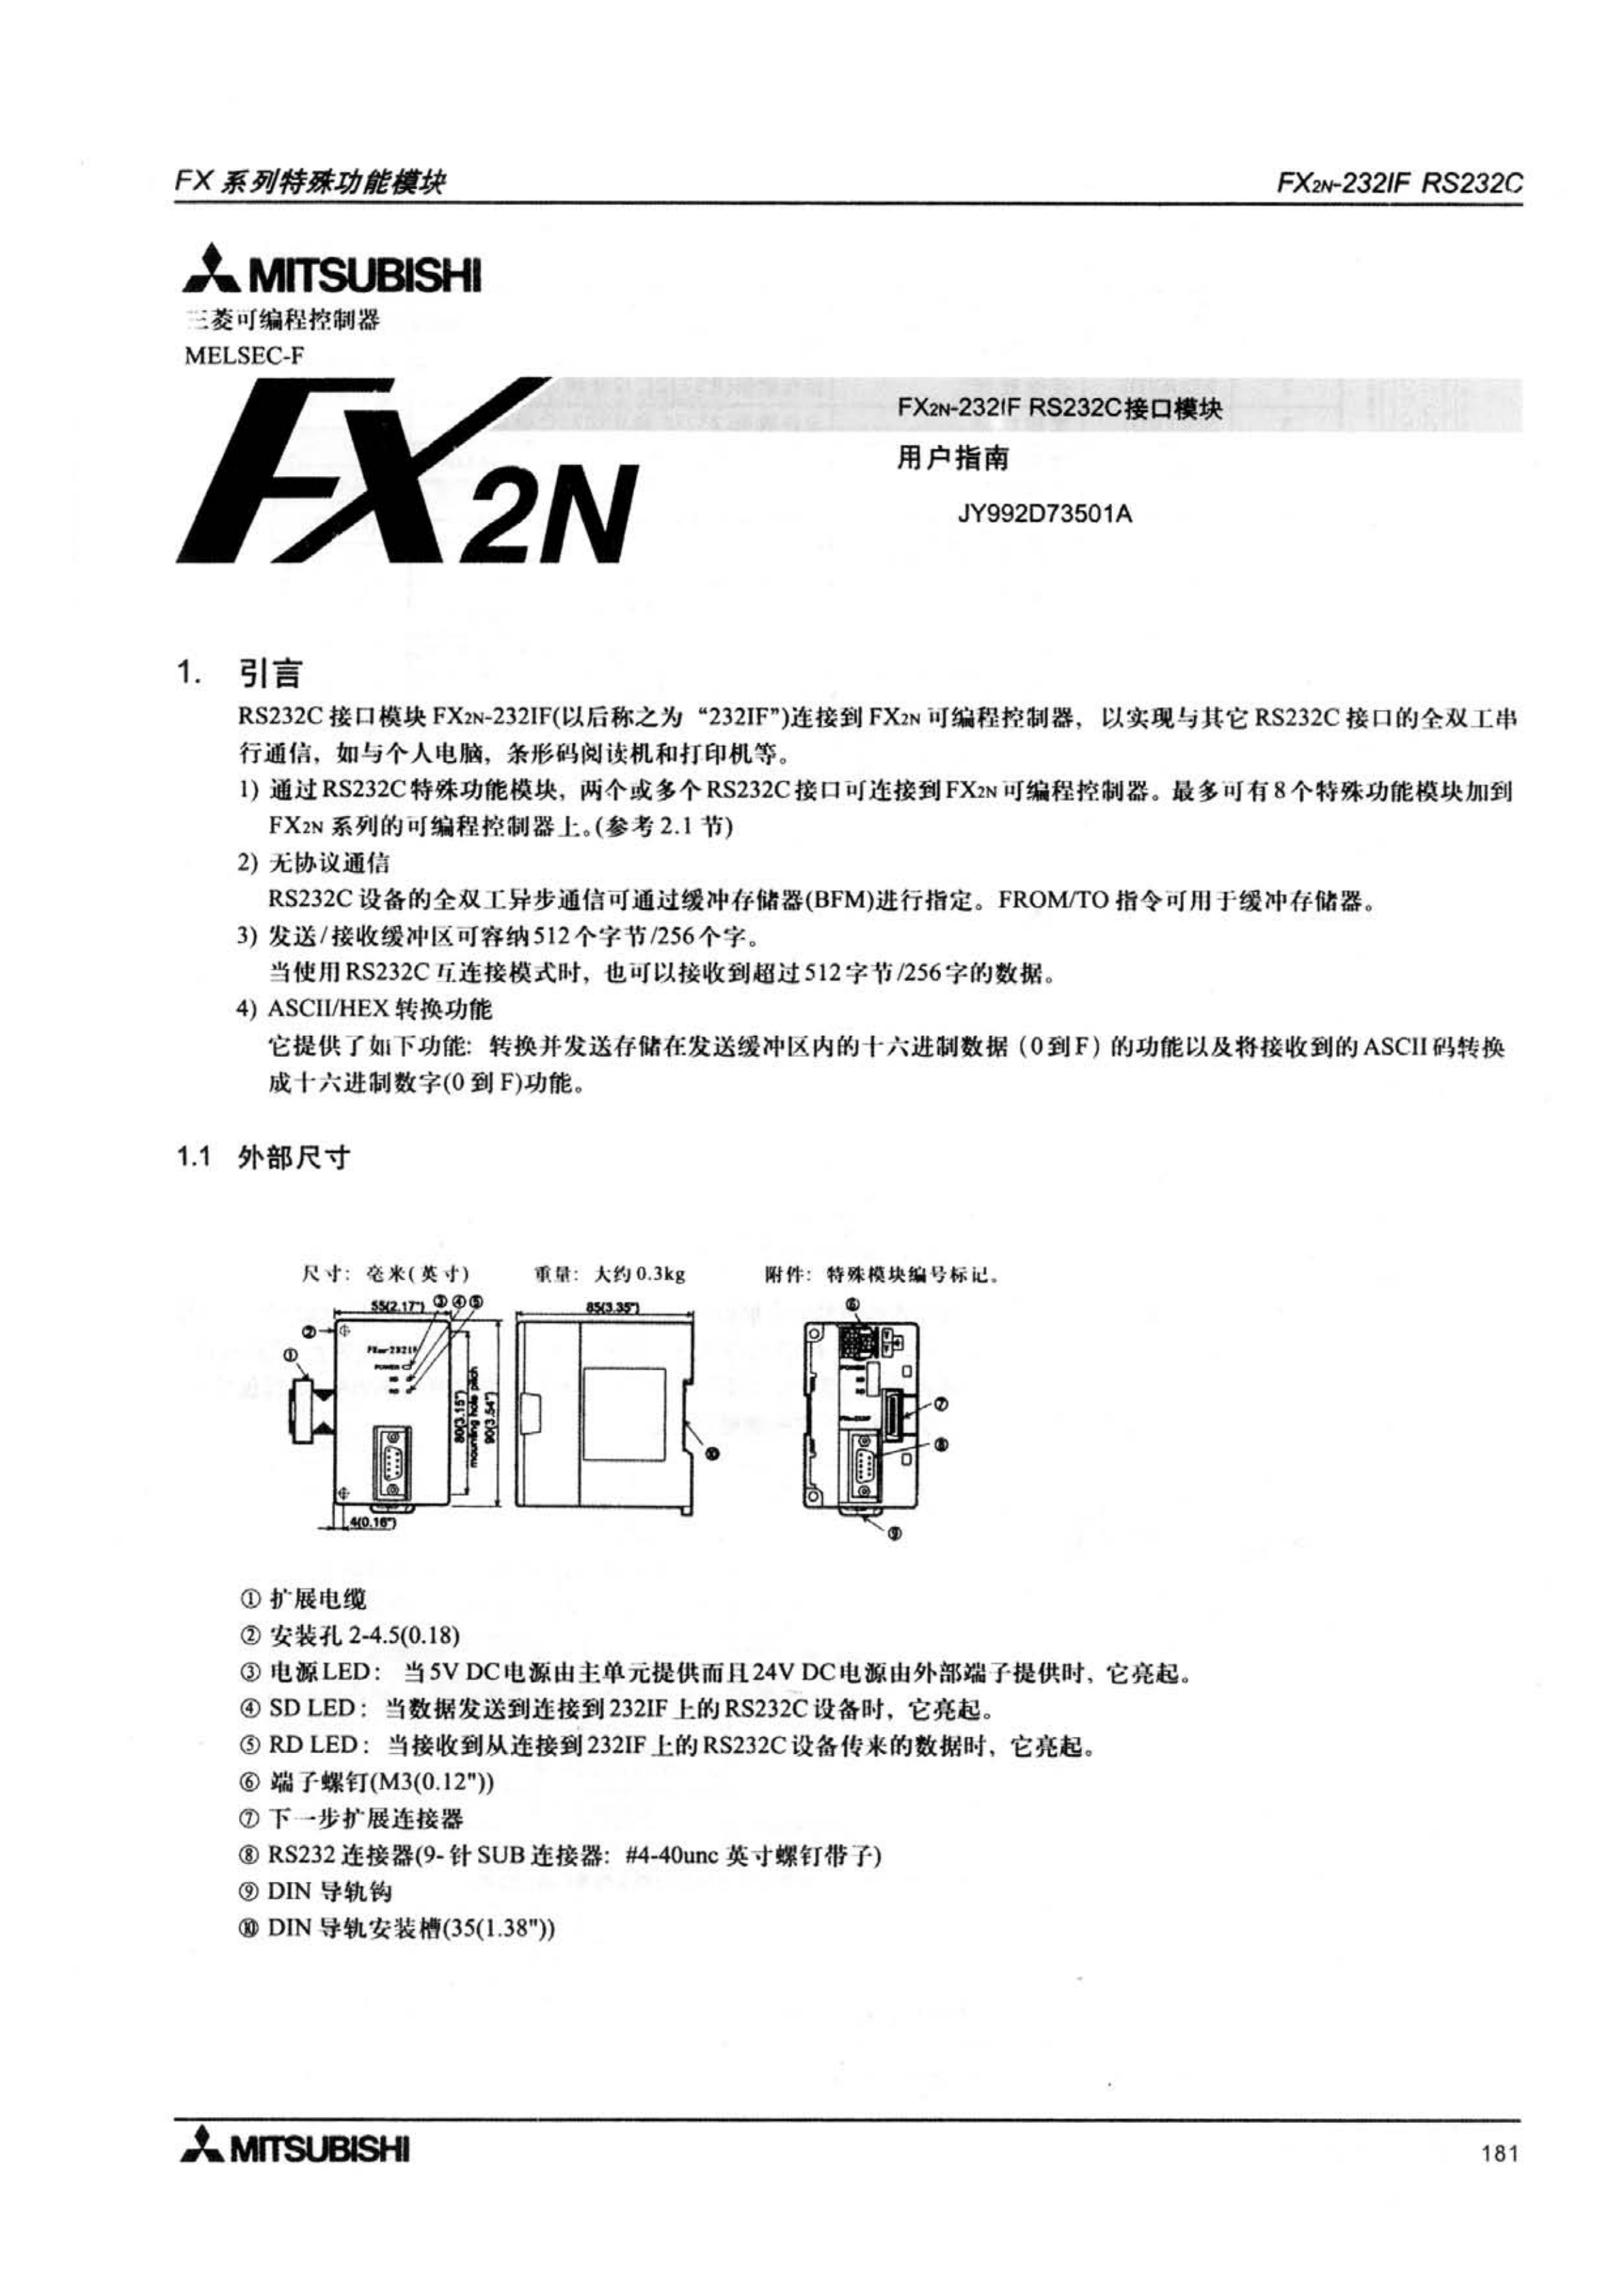 FX2N-1RM-E-SET手册三菱FX2N-1RM-E-SET用户指南手册_广州菱控